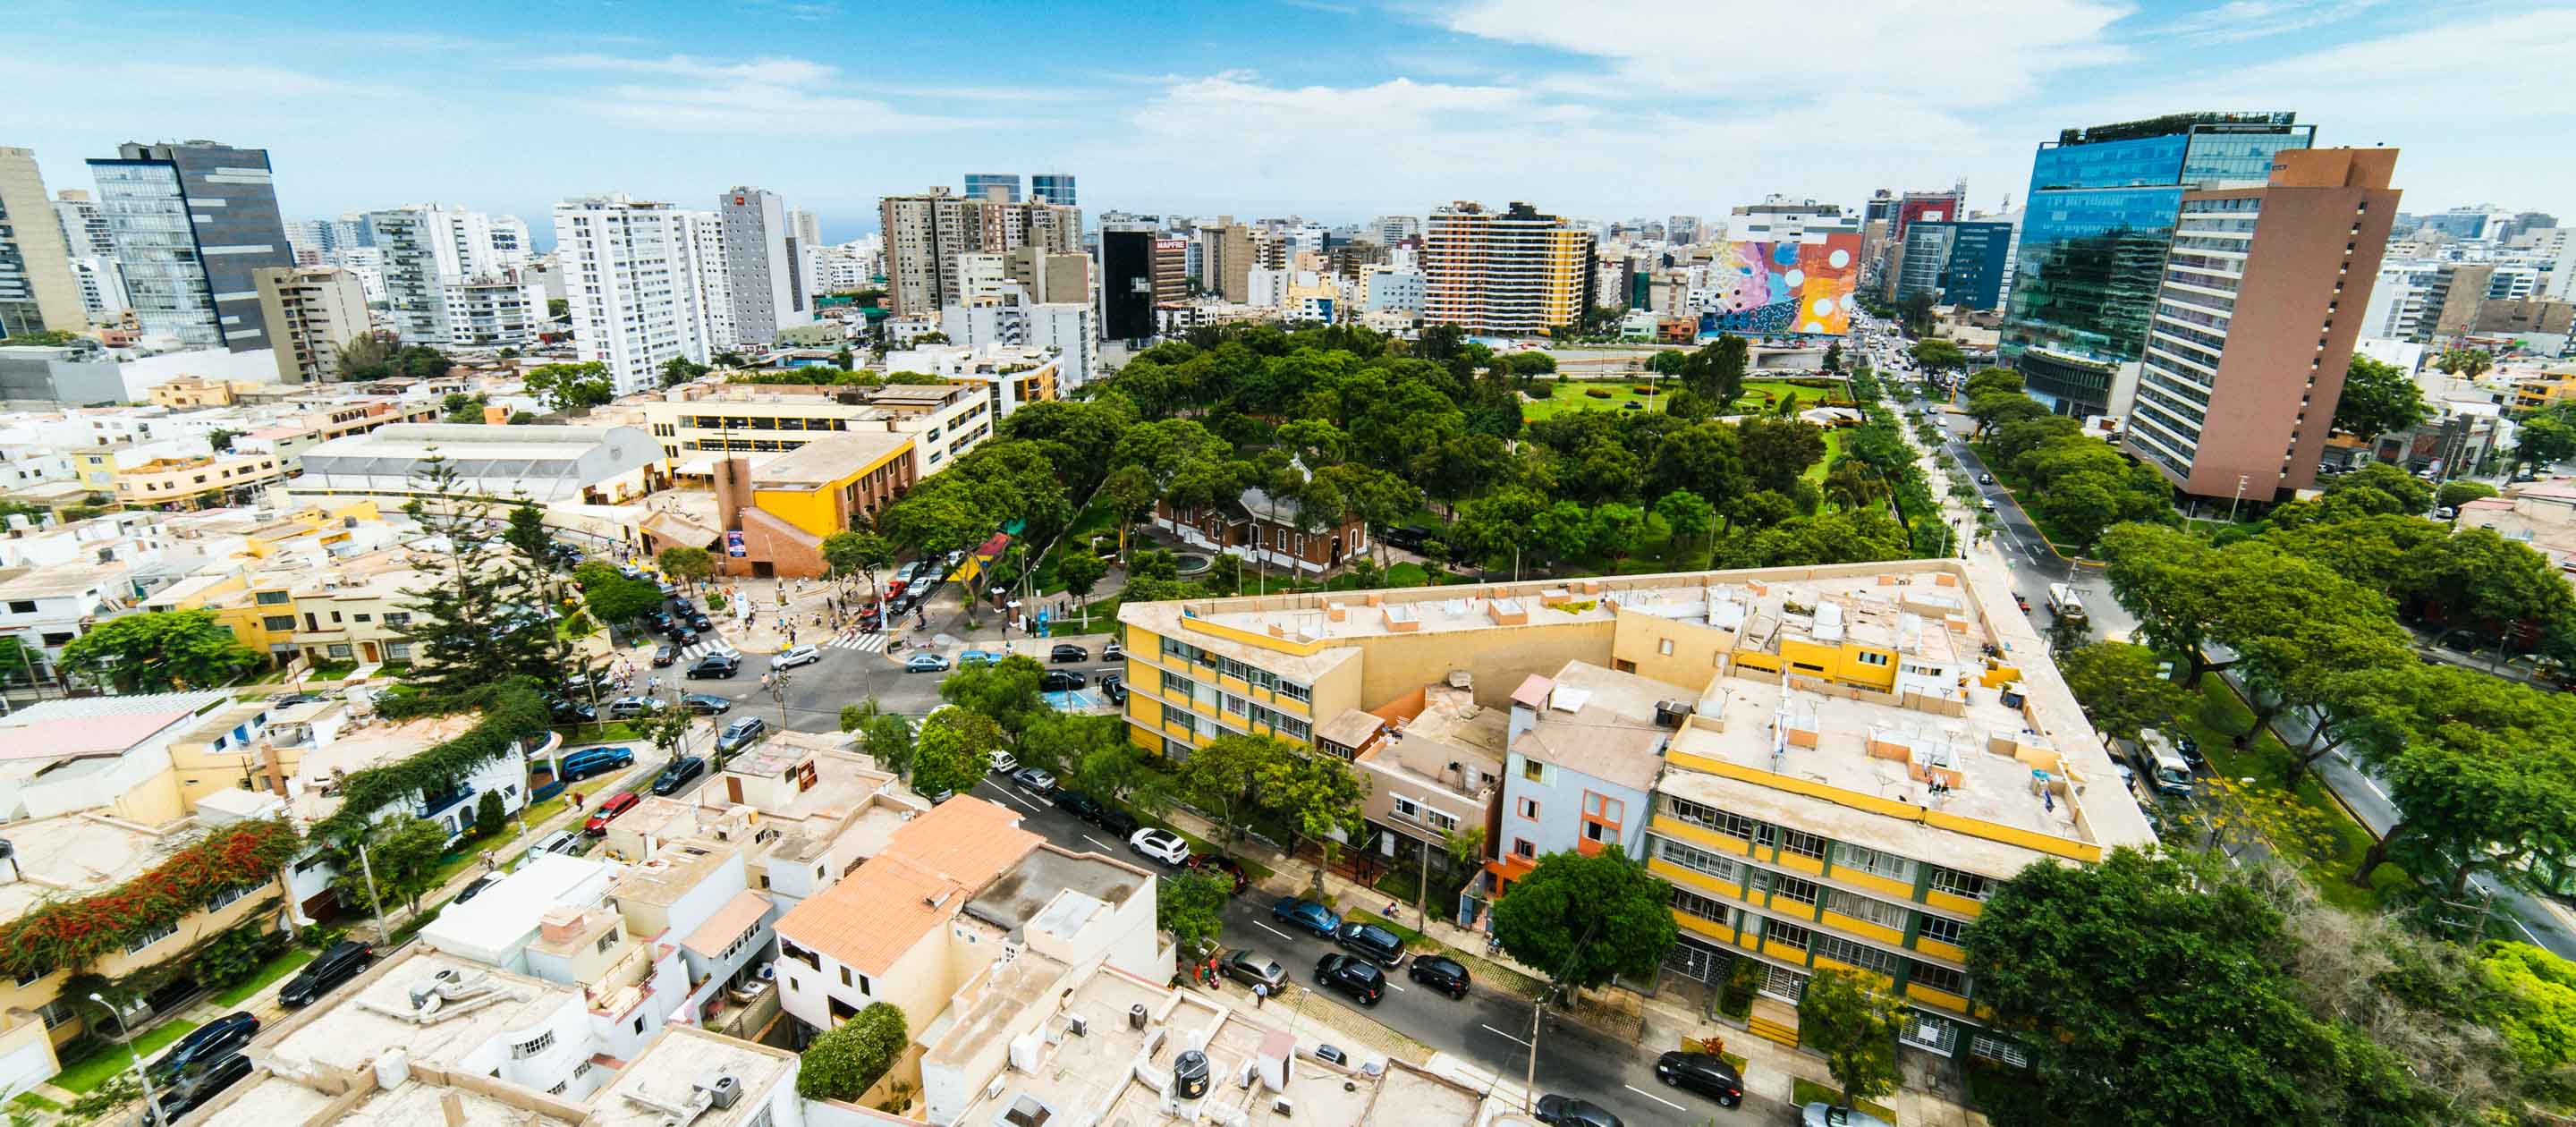 Aerial view of Lima, Peru